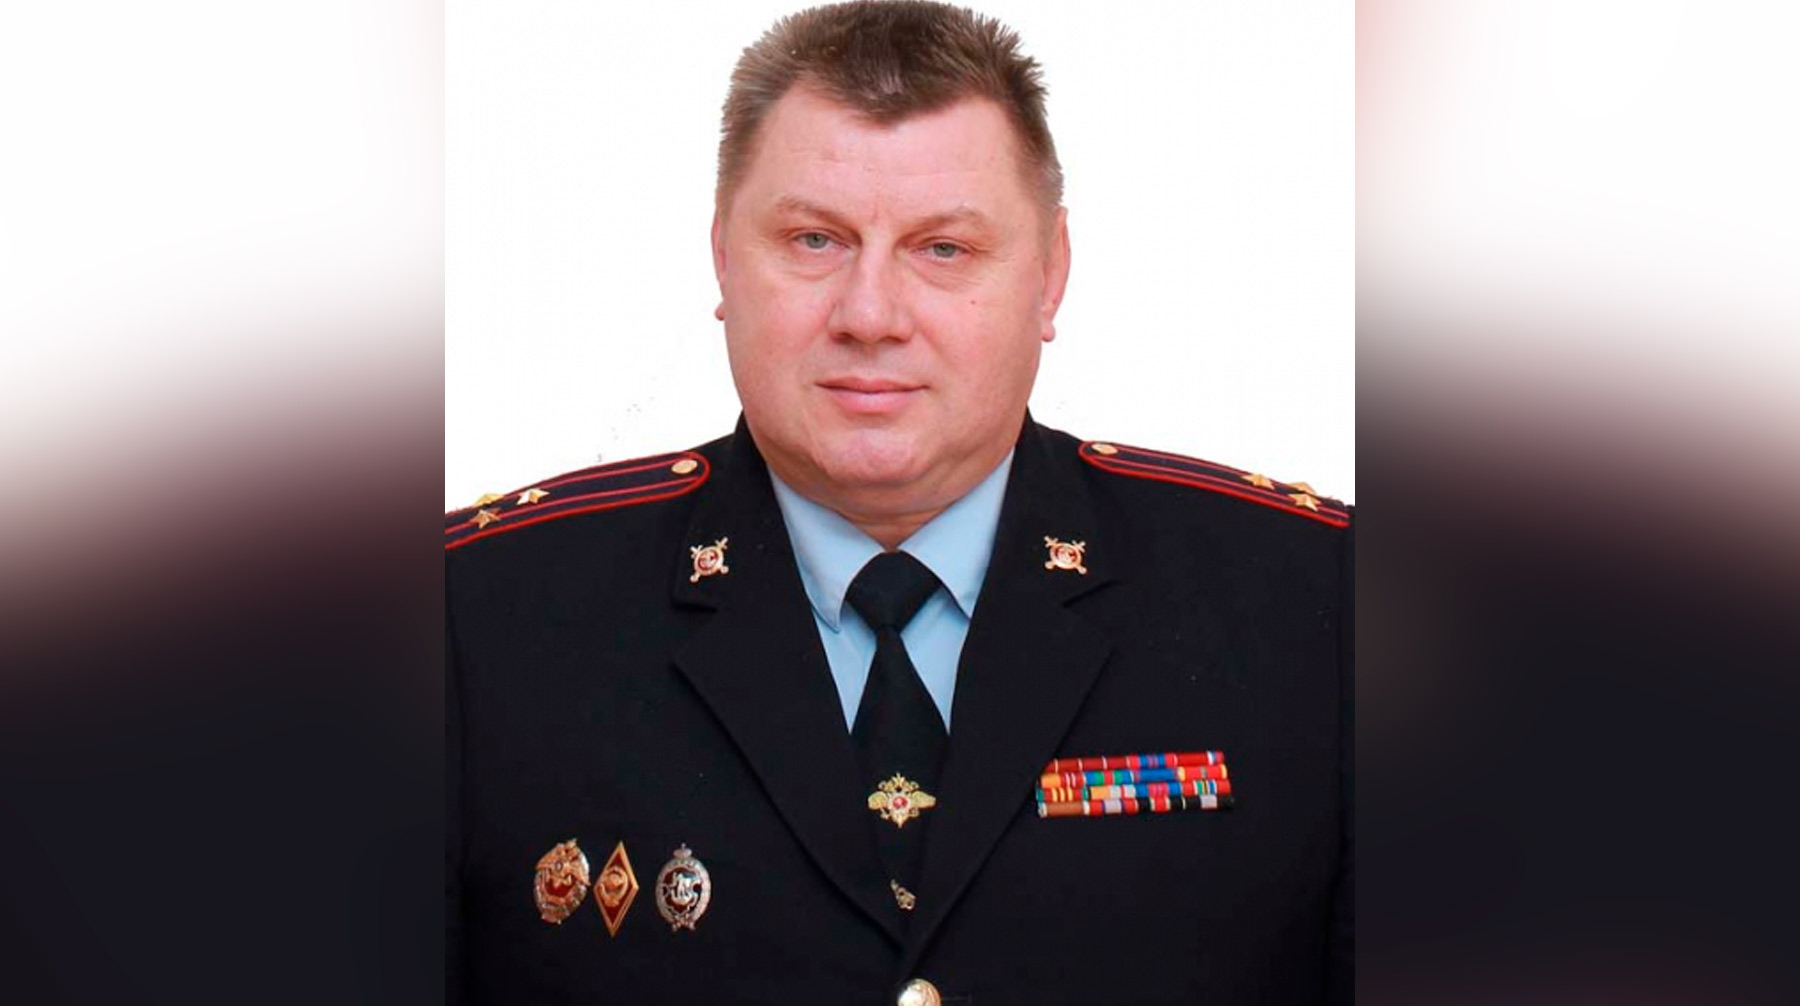 Тахтаров алексей владимирович подполковник полиции видное фото